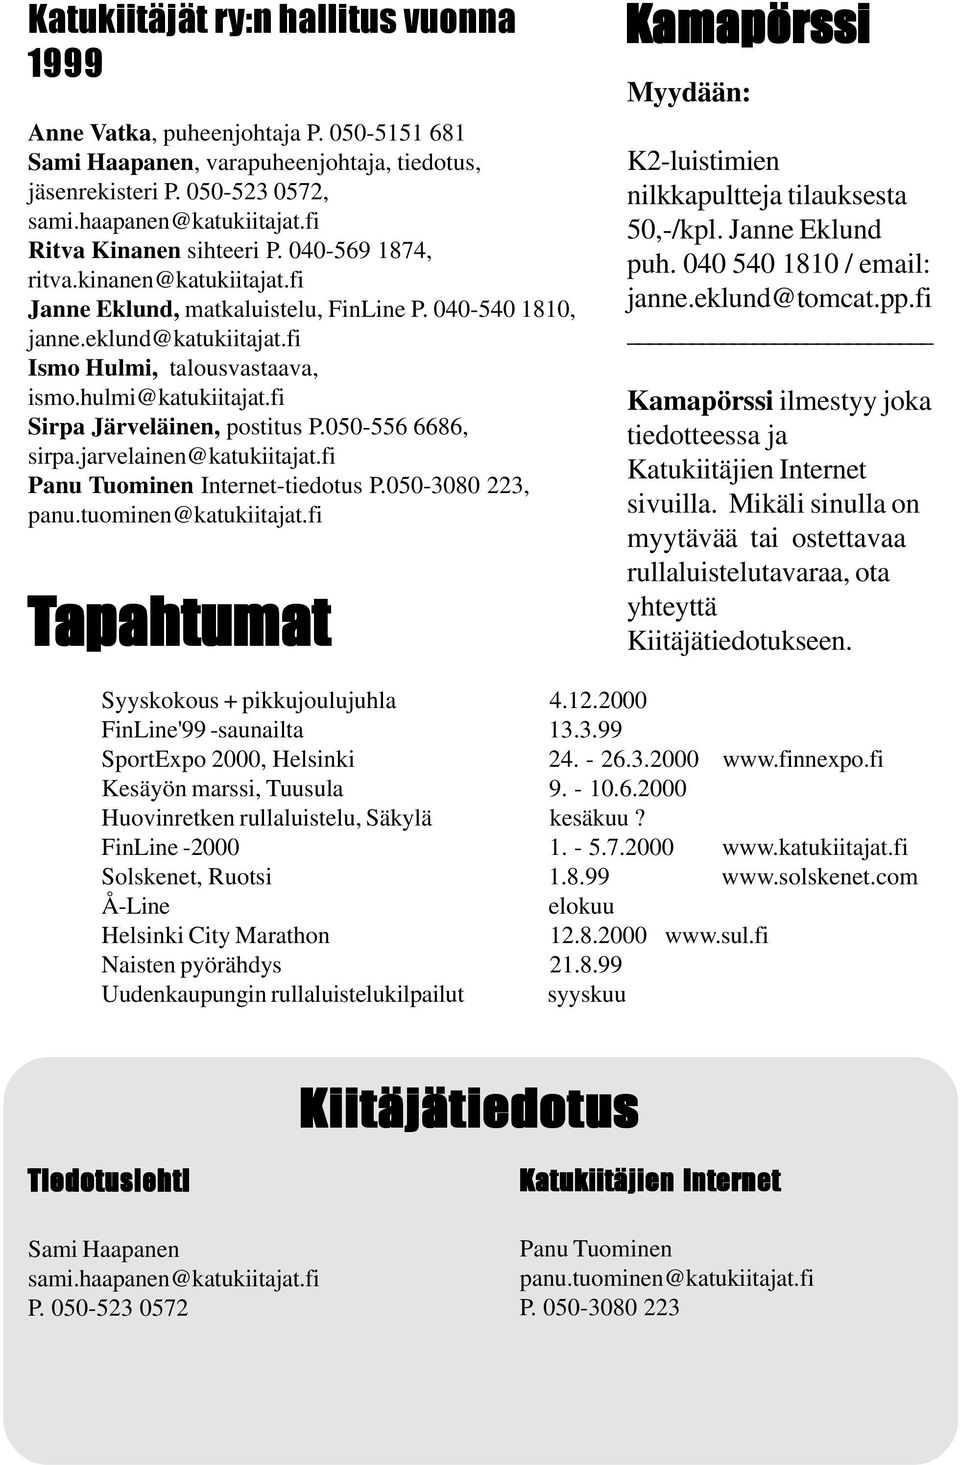 hulmi@katukiitajat.fi Sirpa Järveläinen, postitus P.050-556 6686, sirpa.jarvelainen@katukiitajat.fi Panu Tuominen Internet-tiedotus P.050-3080 223, panu.tuominen@katukiitajat.